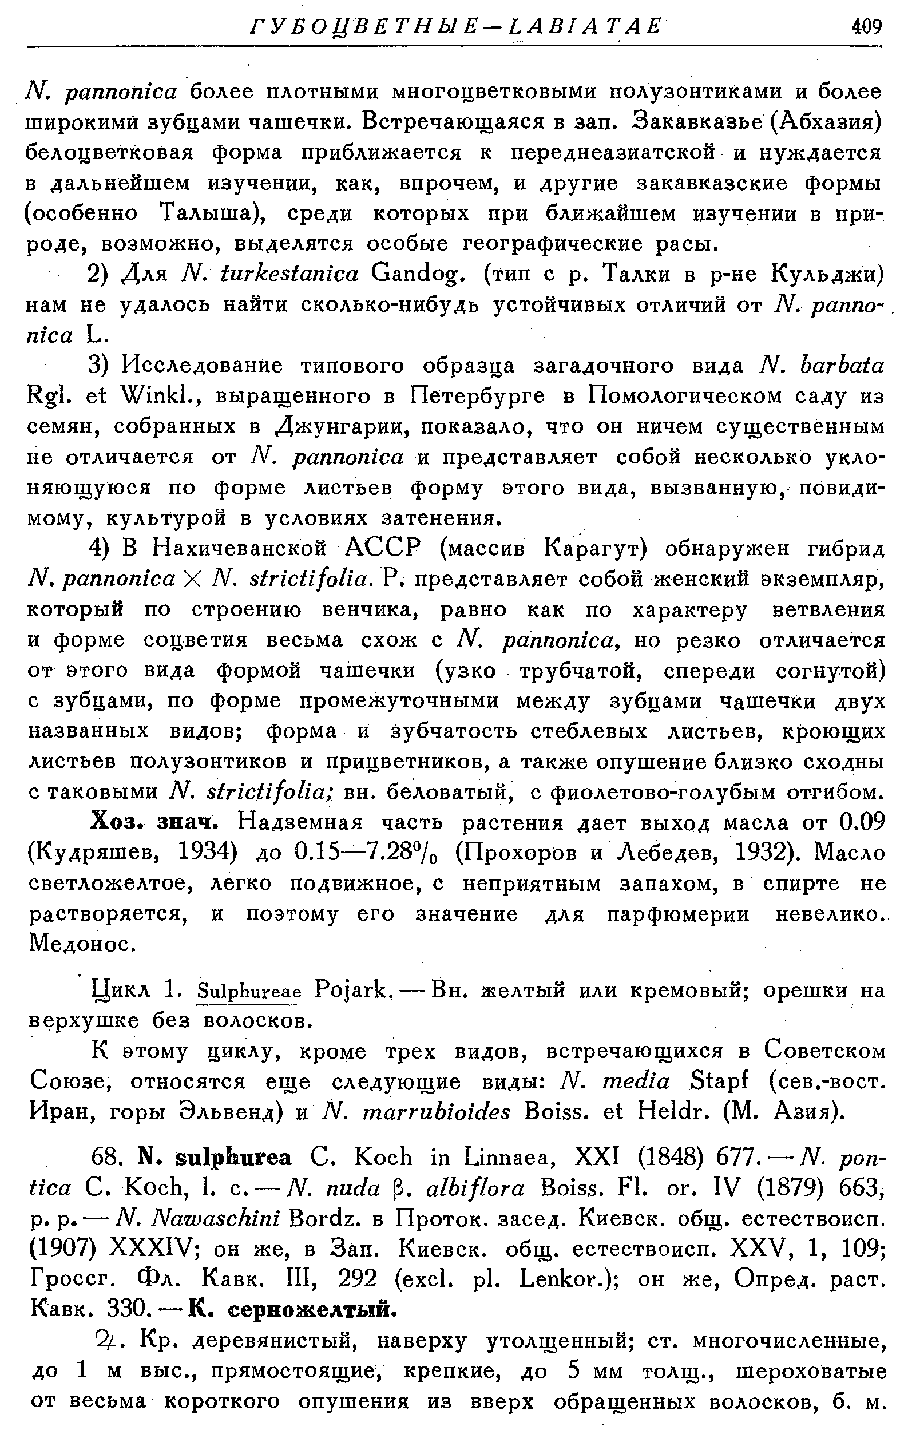 https://forum.plantarium.ru/misc.php?action=pun_attachment&amp;item=30135